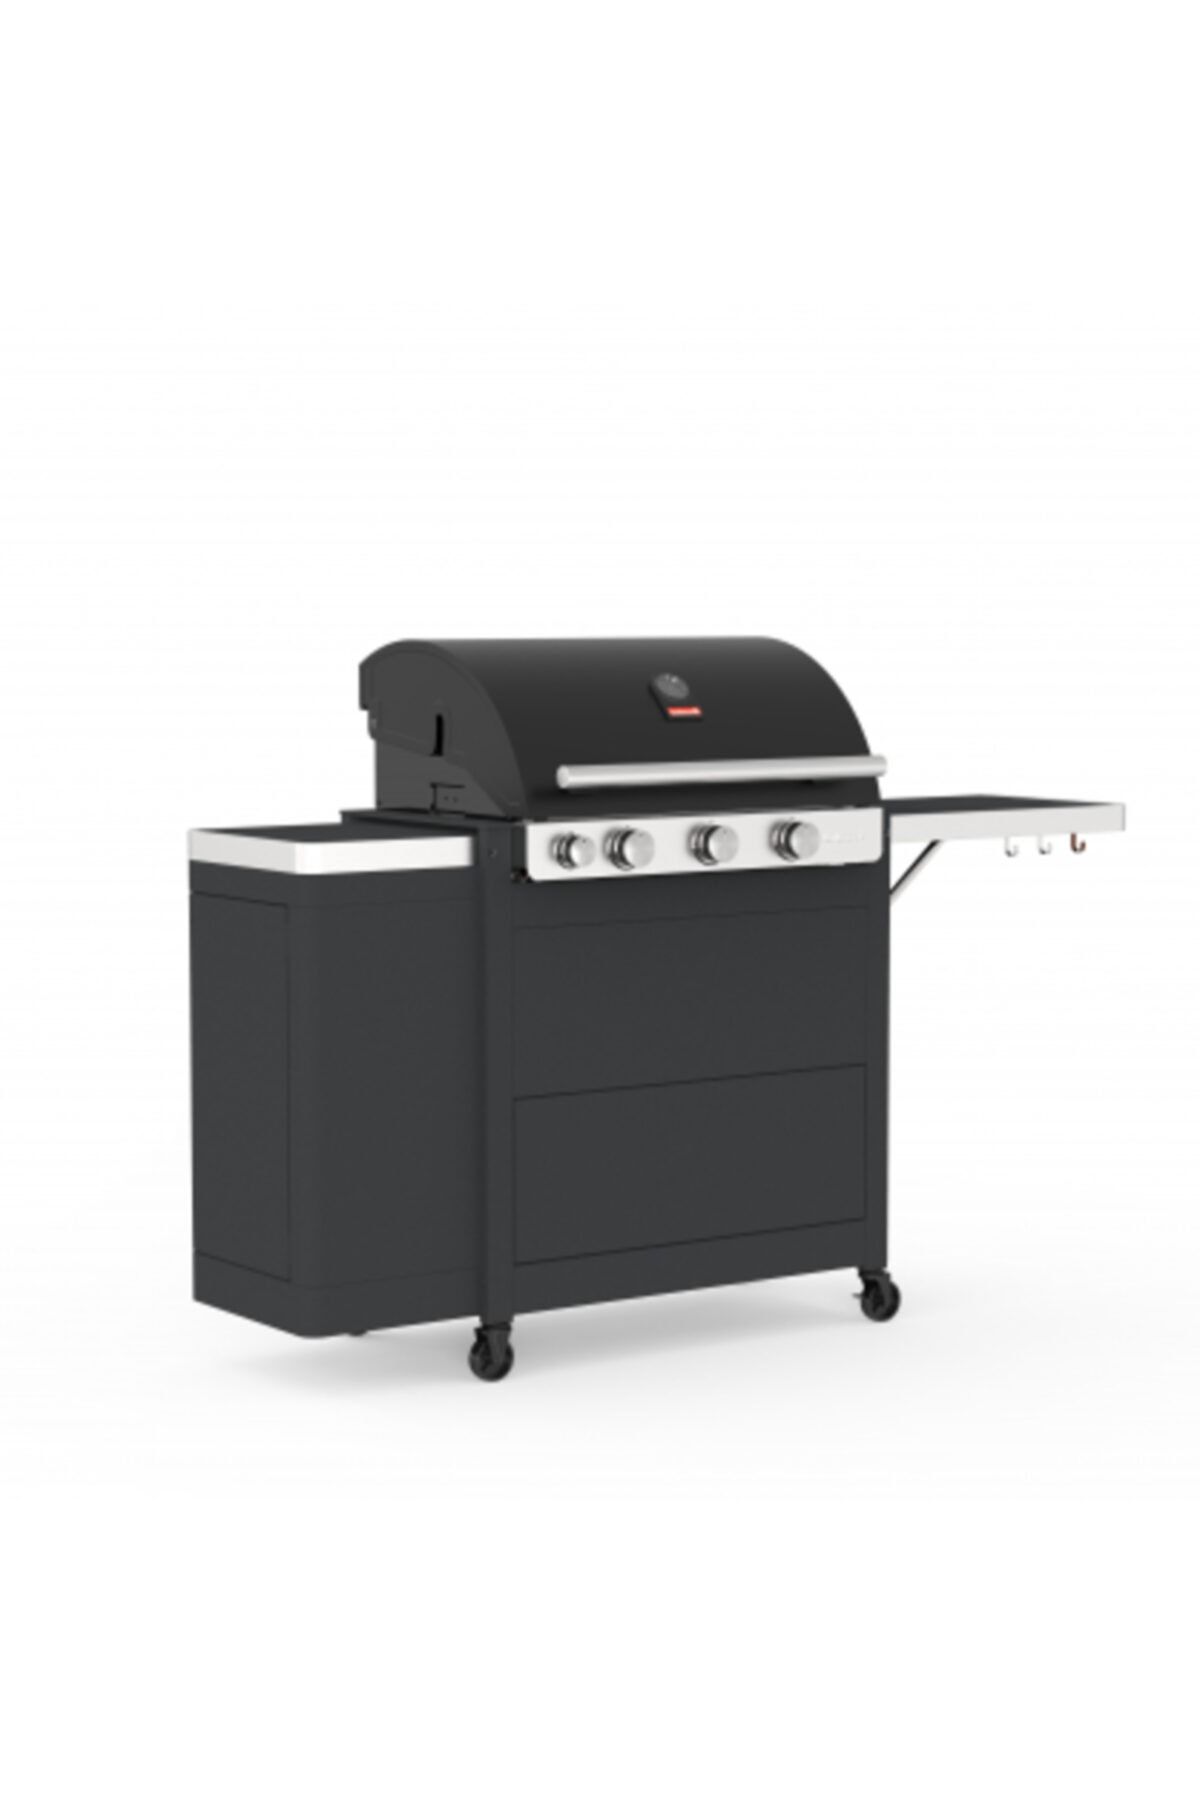 Barbecook Stella 3221 Çekmeceli Gazlı Siyah Mangal 174x59x119 cm